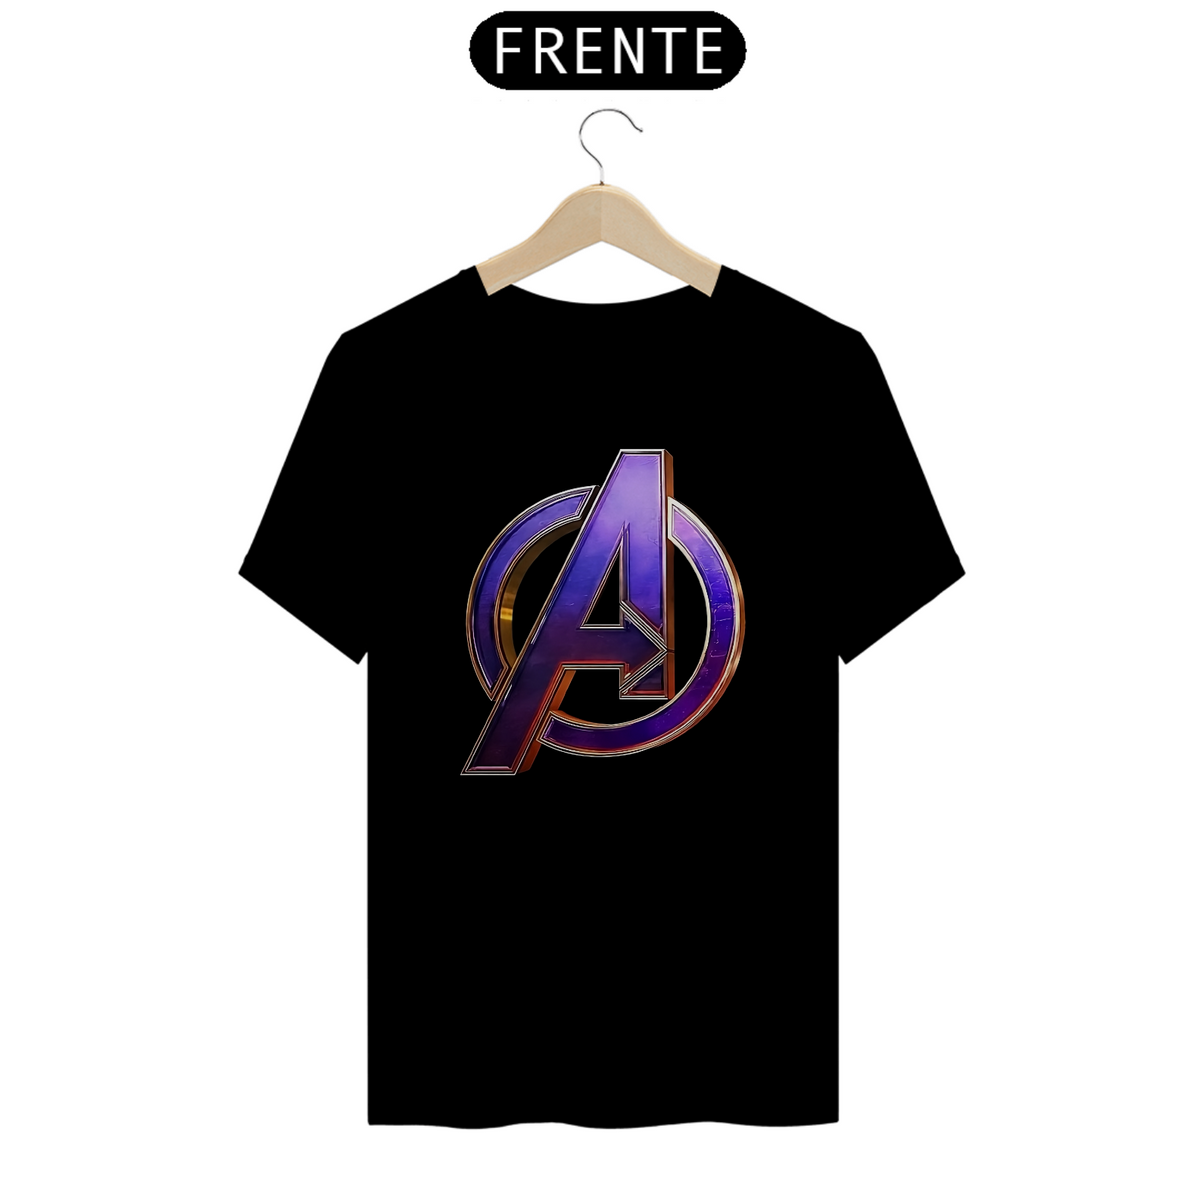 Nome do produto: Avengers symbol